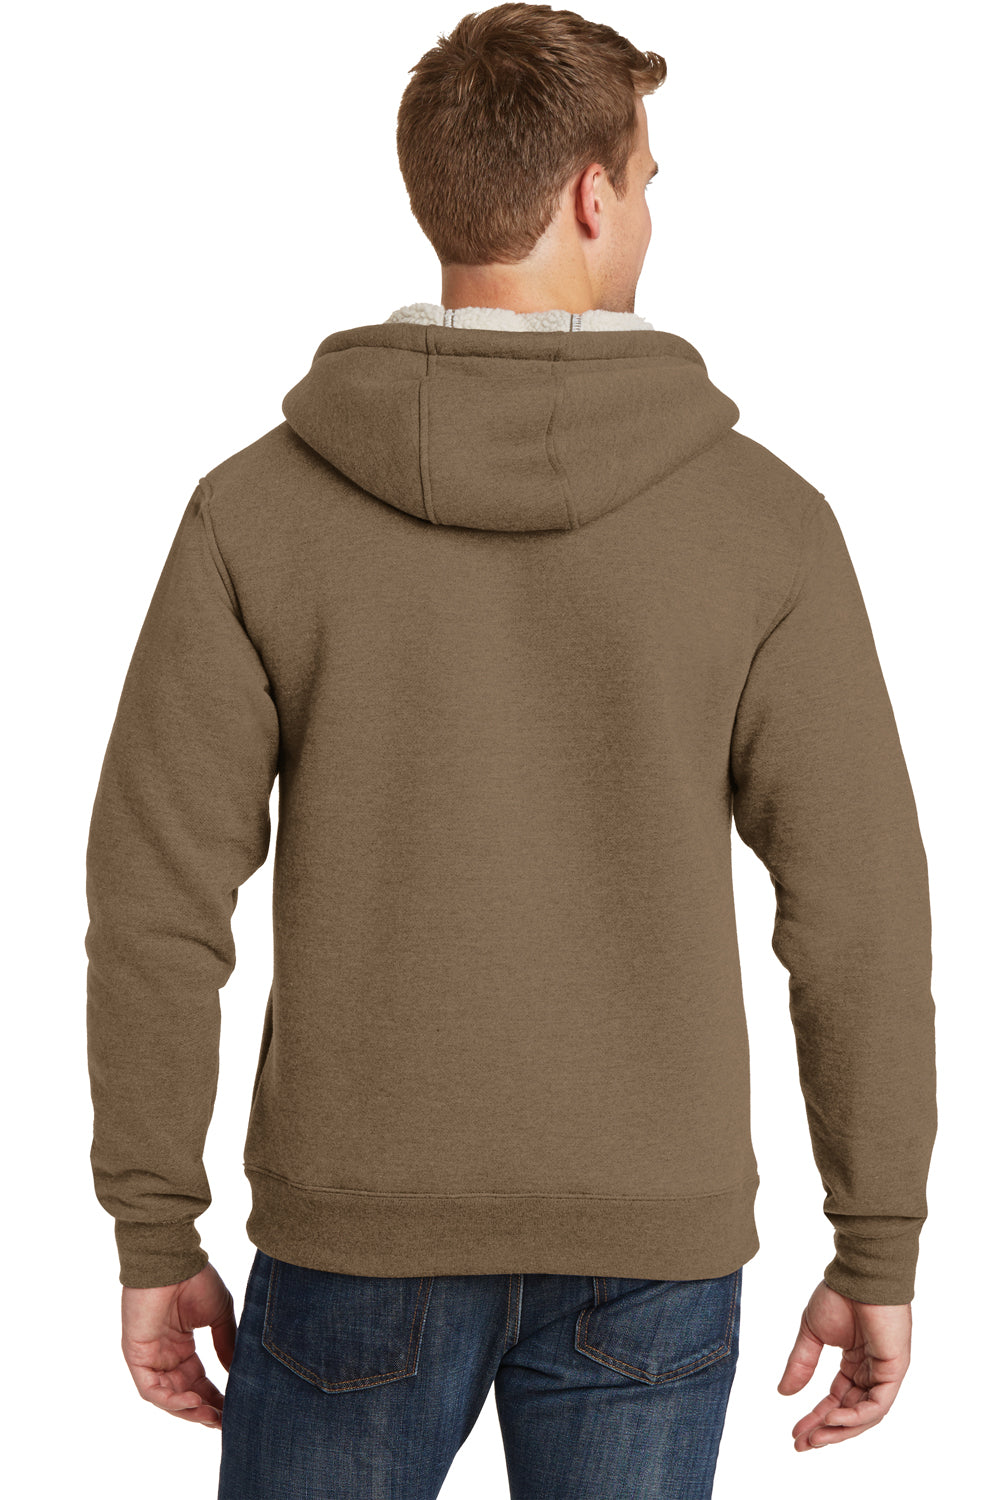 CornerStone CS625 Mens Water Resistant Fleece Full Zip Hooded Sweatshirt Hoodie Brown Back